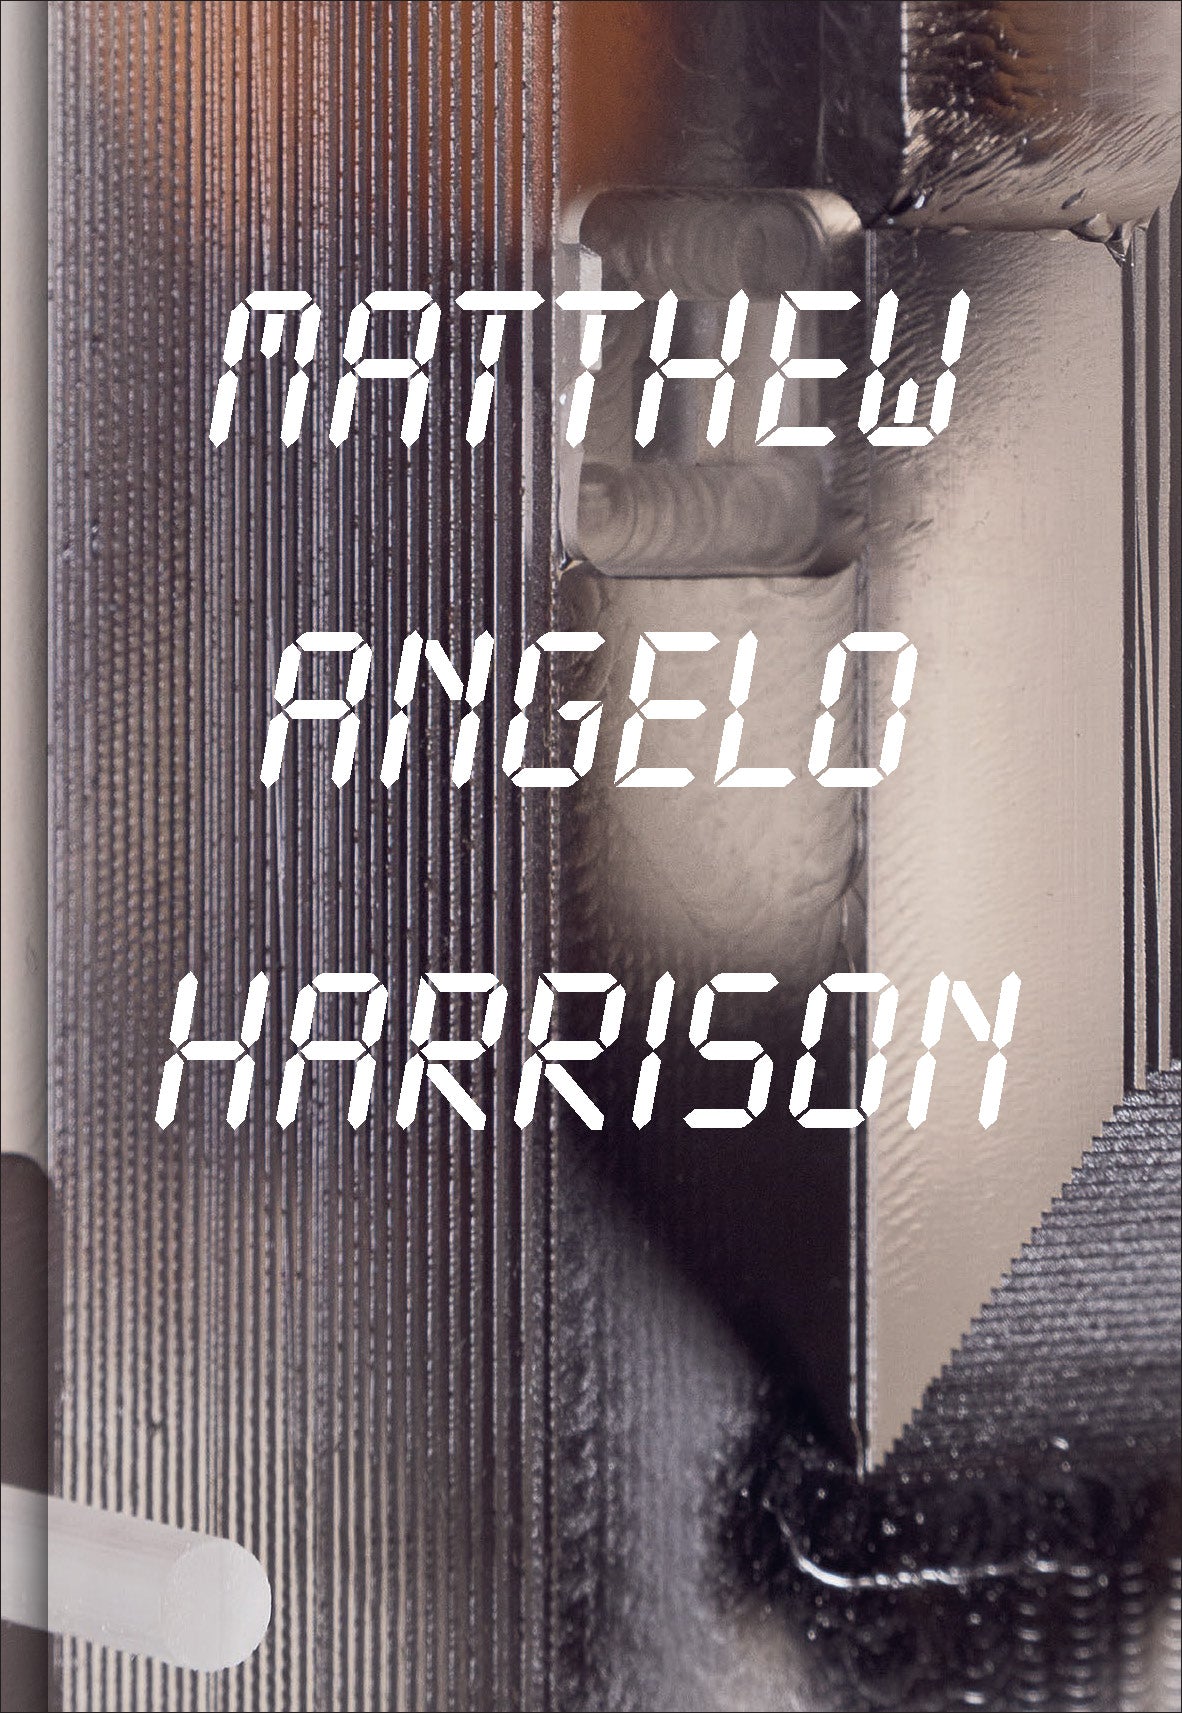 Matthew Angelo Harrison - image001